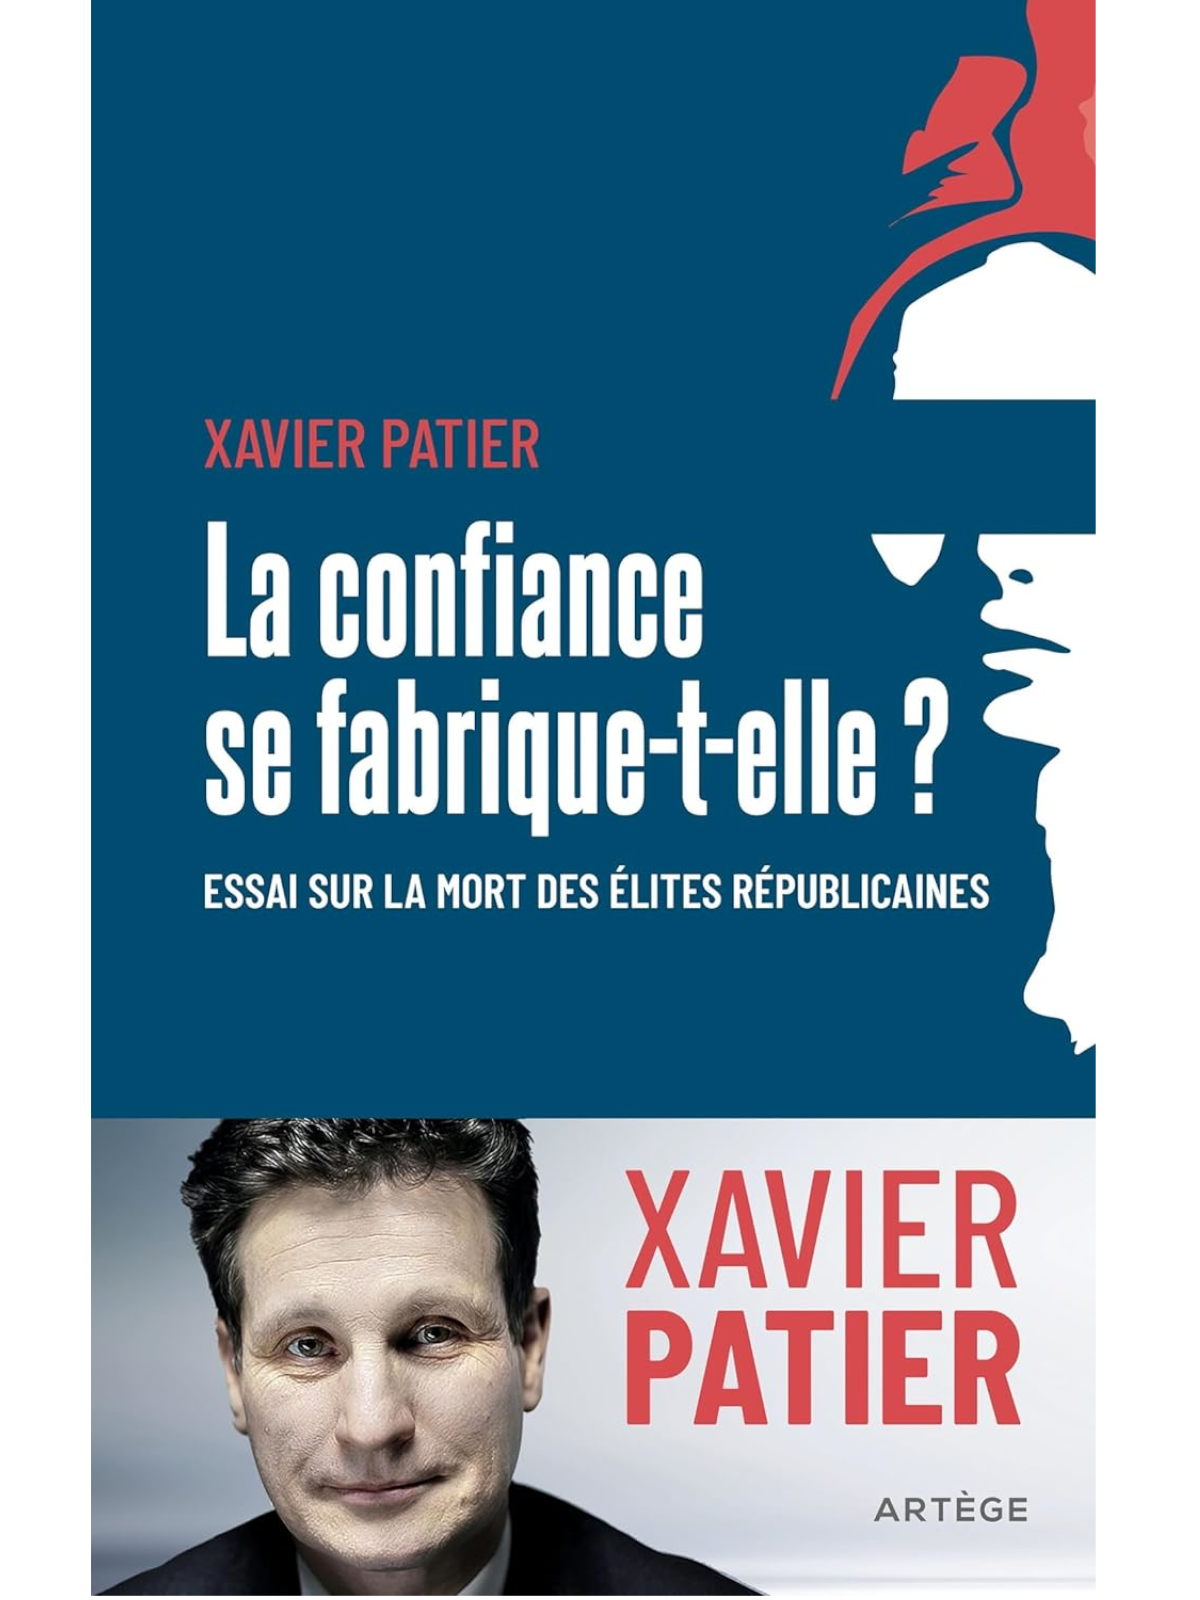 Xavier Patier : La confiance se fabrique-t-elle ?